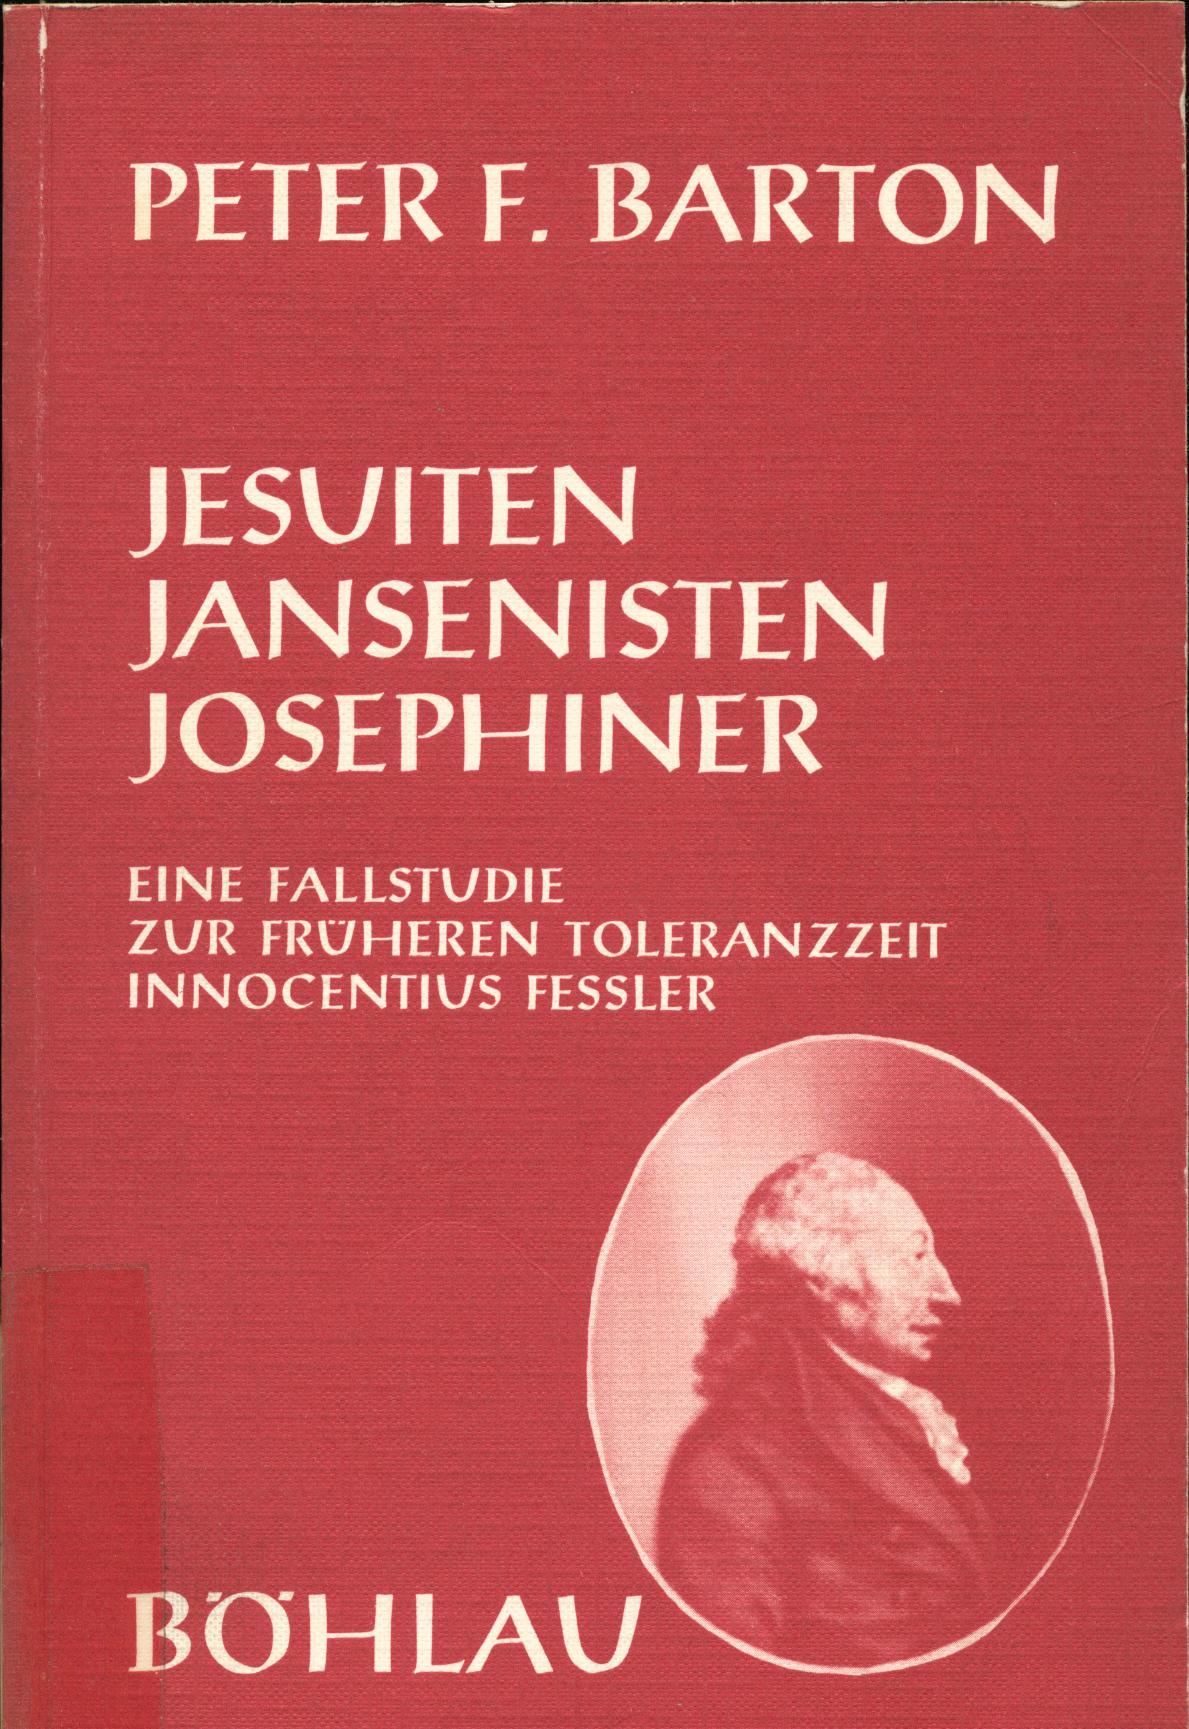 Jesuiten, Jansenisten, Josephiner Eine Fallstudie zur früheren Toleranzzeit Innocentius Fessler, 1. Teil 1. Auflage - Barton, Peter F.